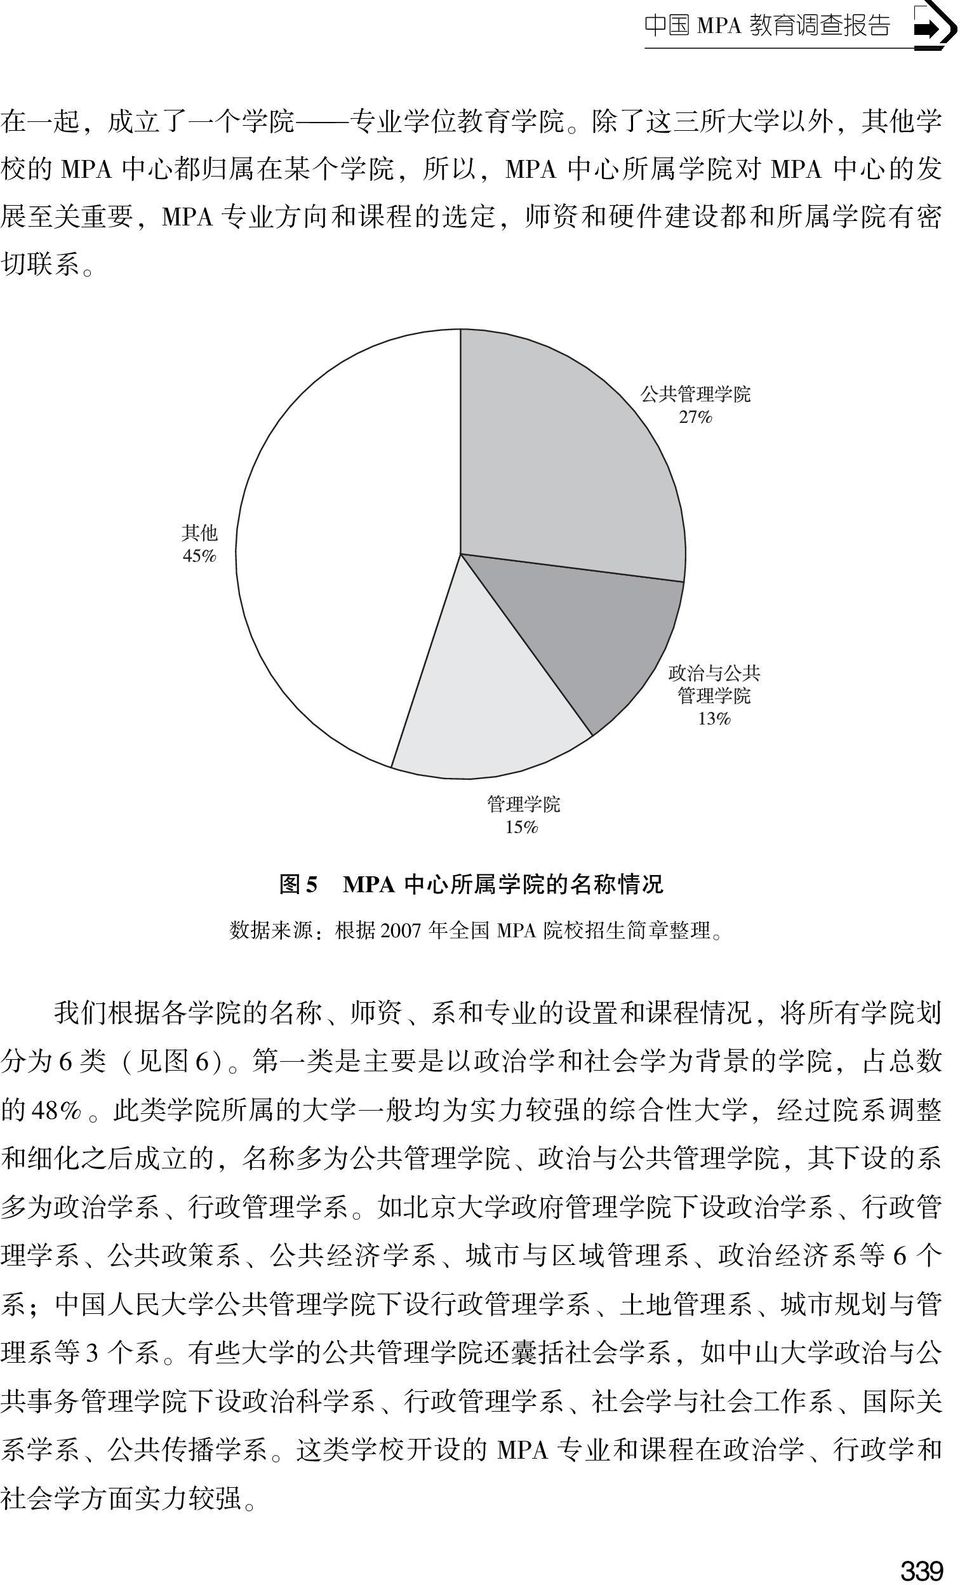 学 为 背 景 的 学 院, 占 总 数 的 48% 此 类 学 院 所 属 的 大 学 一 般 均 为 实 力 较 强 的 综 合 性 大 学, 经 过 院 系 调 整 和 细 化 之 后 成 立 的, 名 称 多 为 公 共 管 理 学 院 政 治 与 公 共 管 理 学 院, 其 下 设 的 系 多 为 政 治 学 系 行 政 管 理 学 系 如 北 京 大 学 政 府 管 理 学 院 下